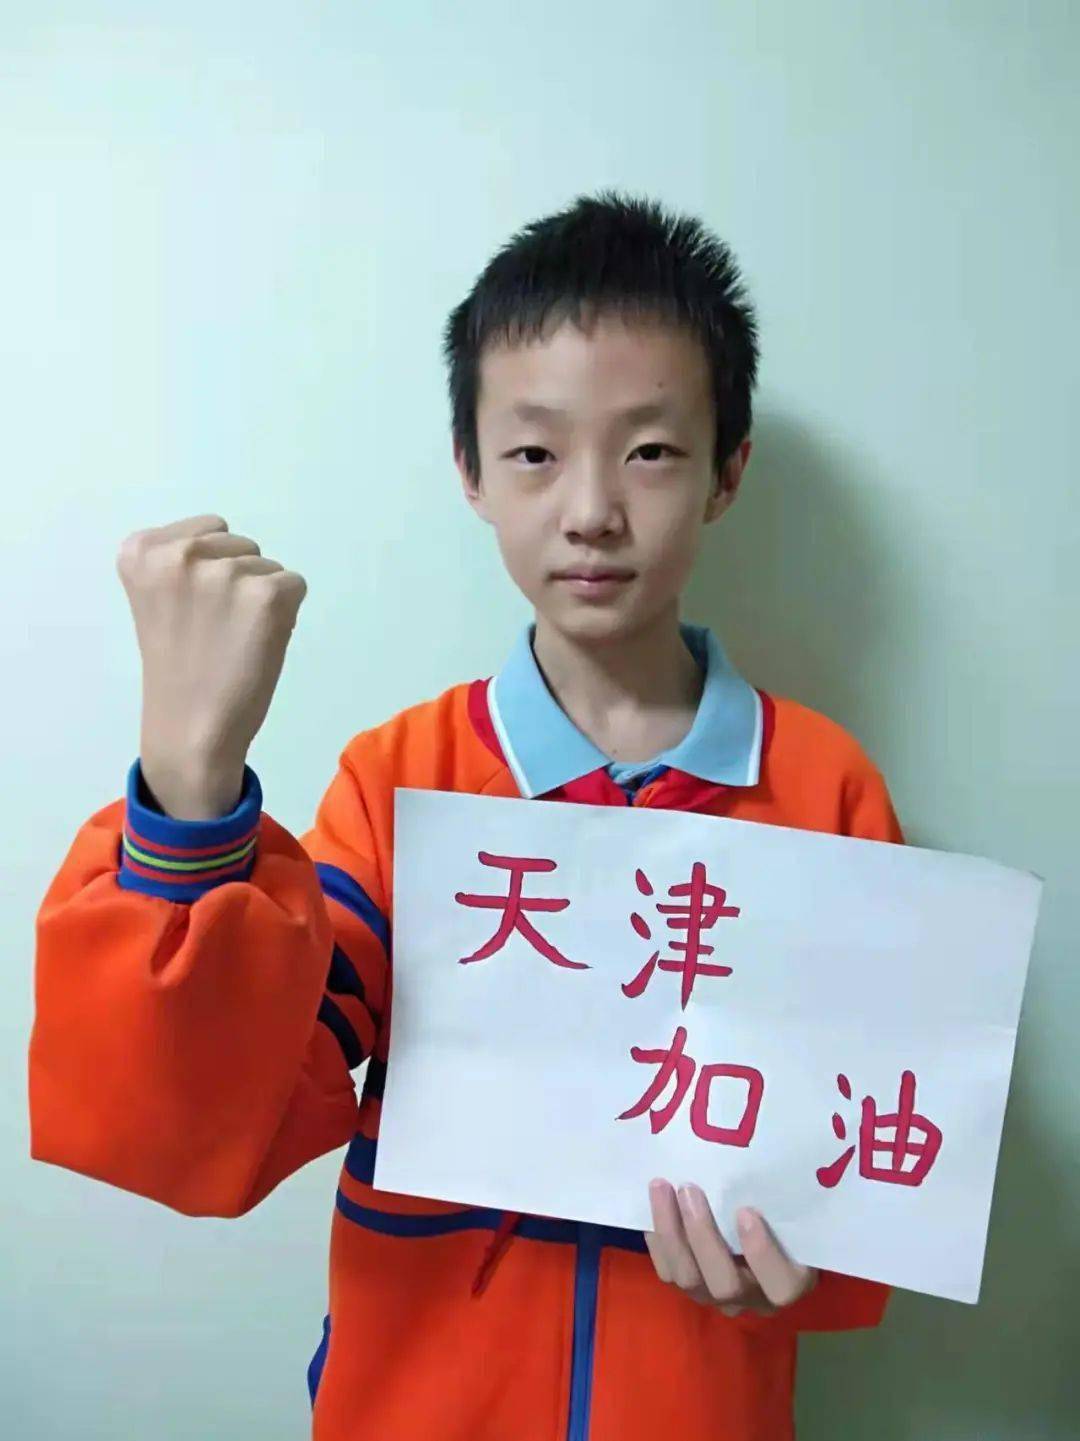 上海道小学姓名:王成思班级:七年十二班学校:天津市滨海新区塘沽第二